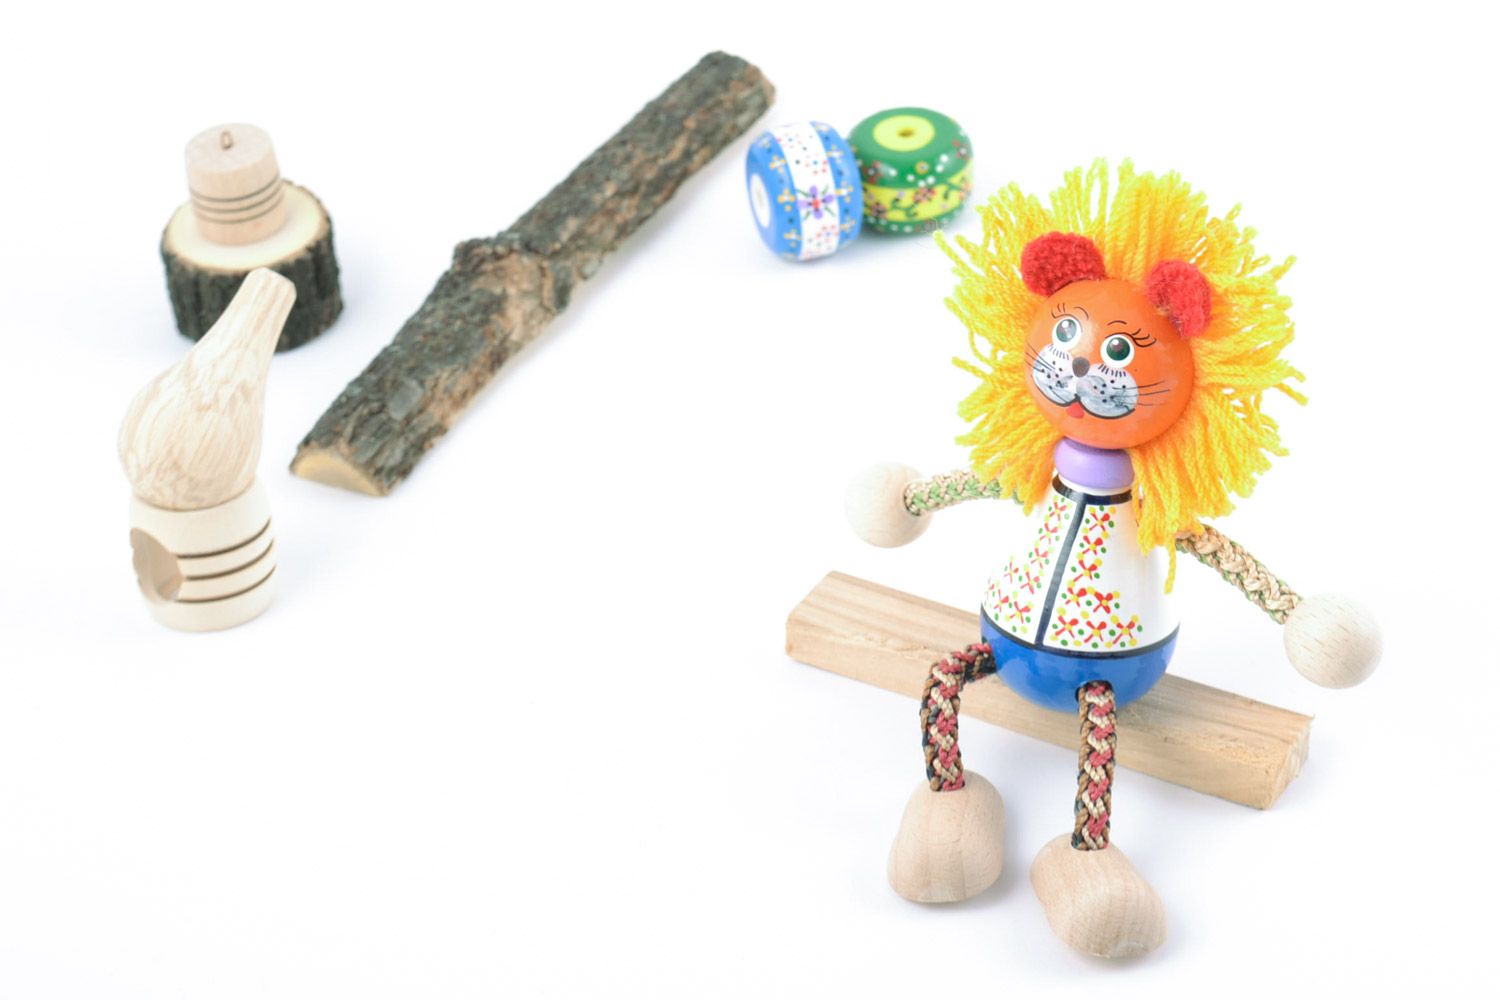 Авторская деревянная игрушка из бука расписанная красками вручную Солнечный лев фото 1